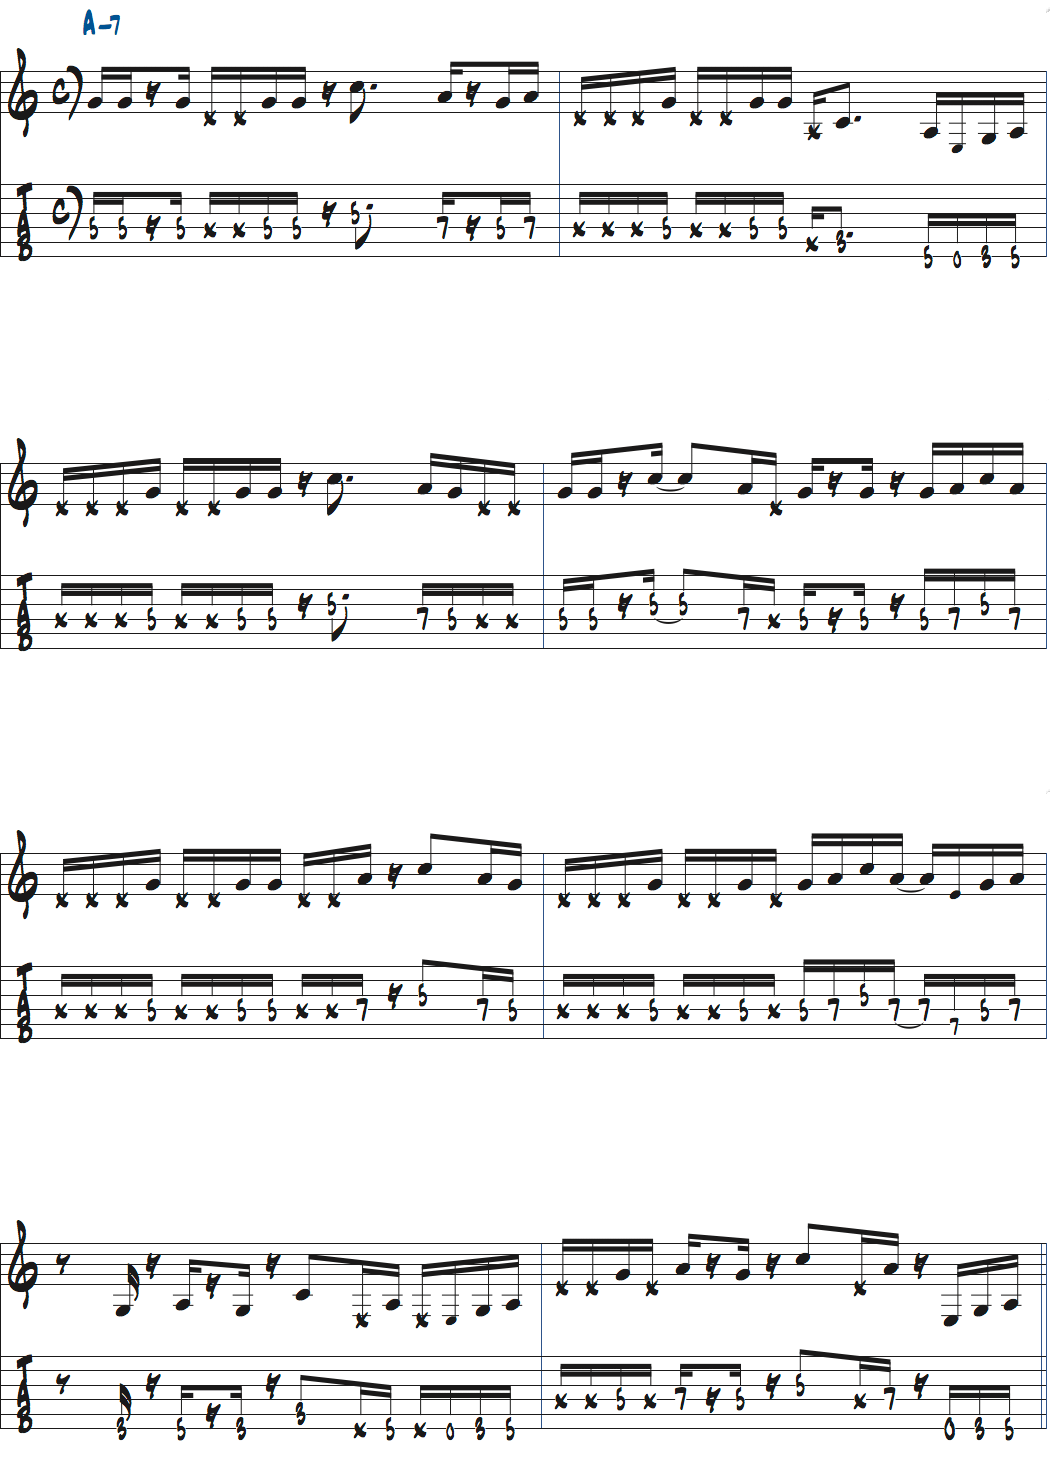 ポールジャクソンジュニアが弾くAm7のm3rd・Cを加えた演奏楽譜